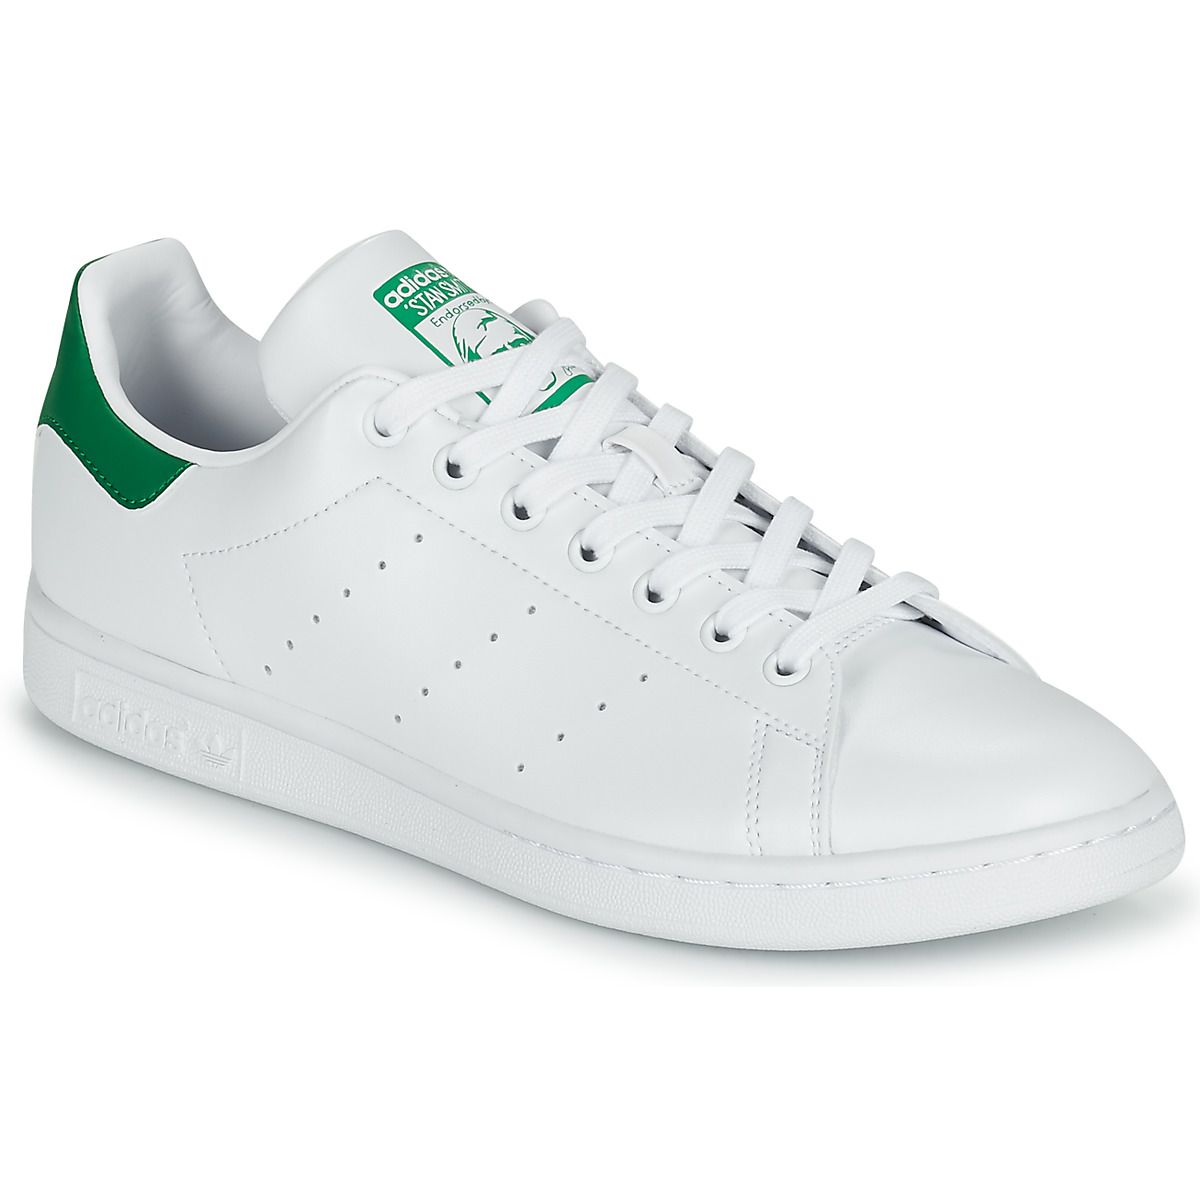 Adidas Stan Smith Wit / Groen - Heren Sneaker - FX5502 - Maat 41 1/3